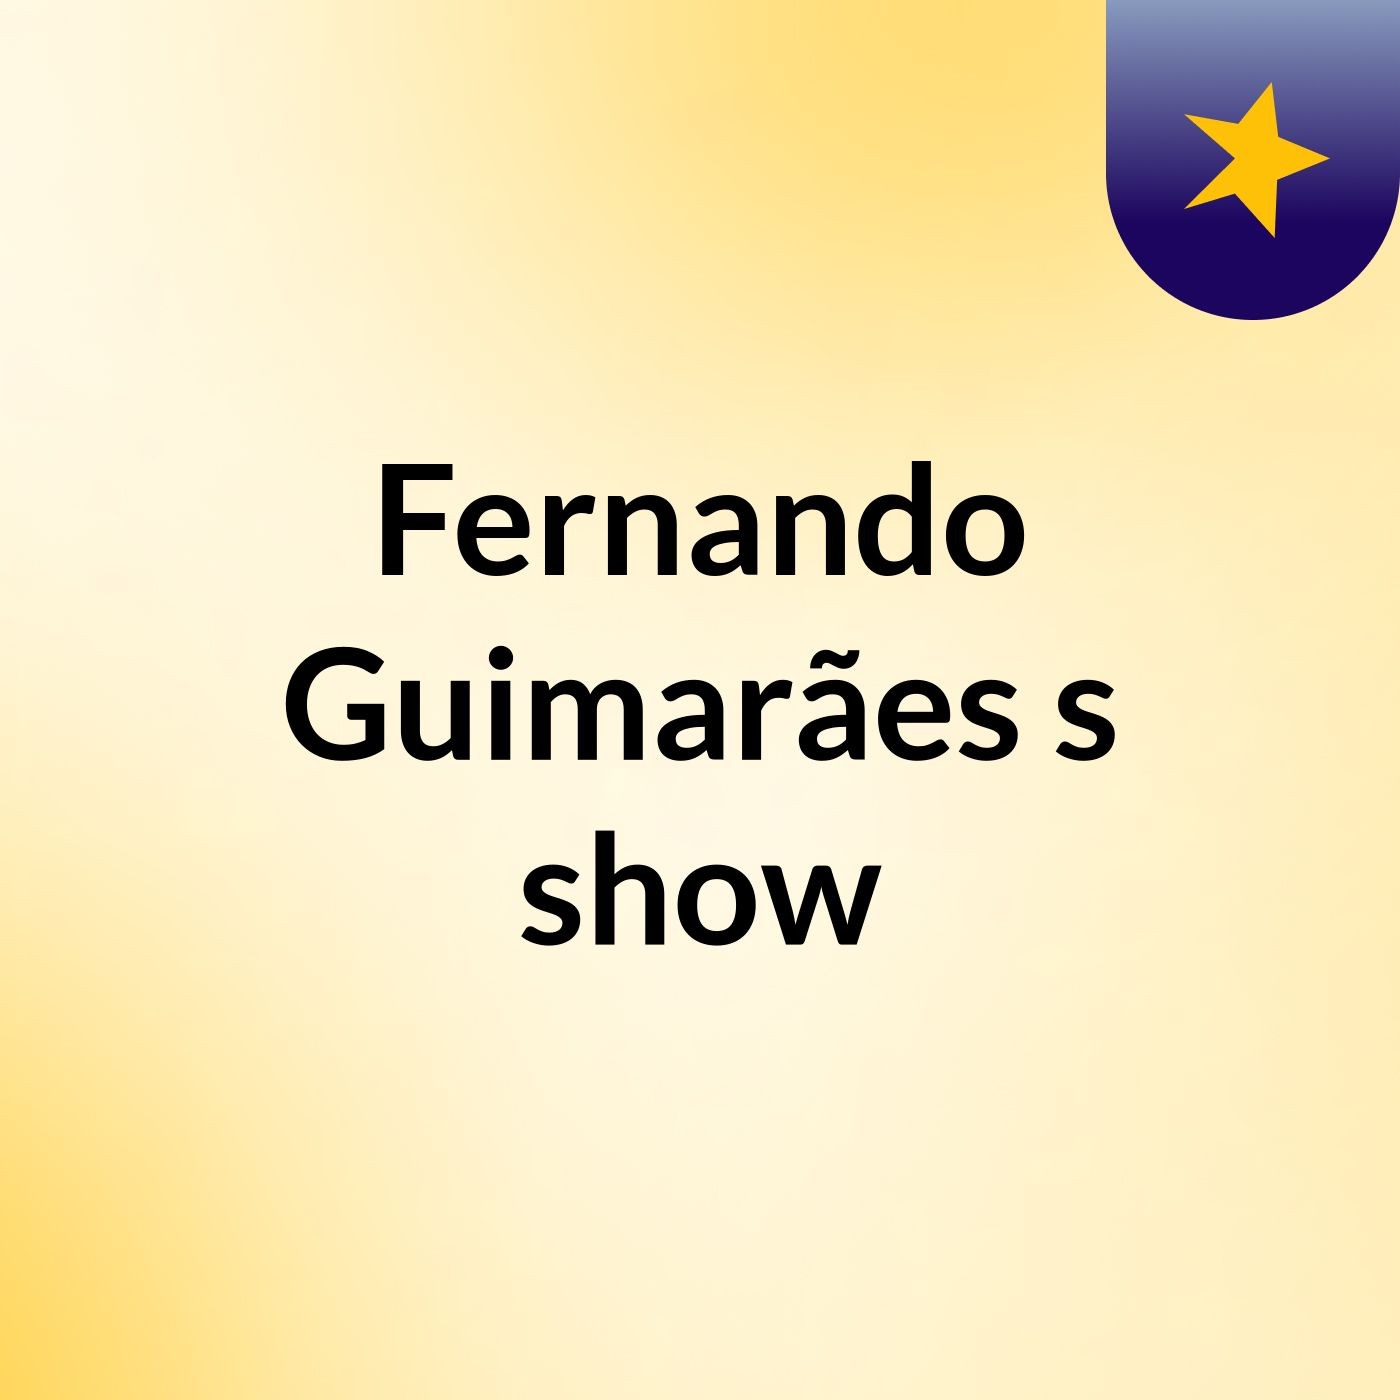 Fernando Guimarães's show